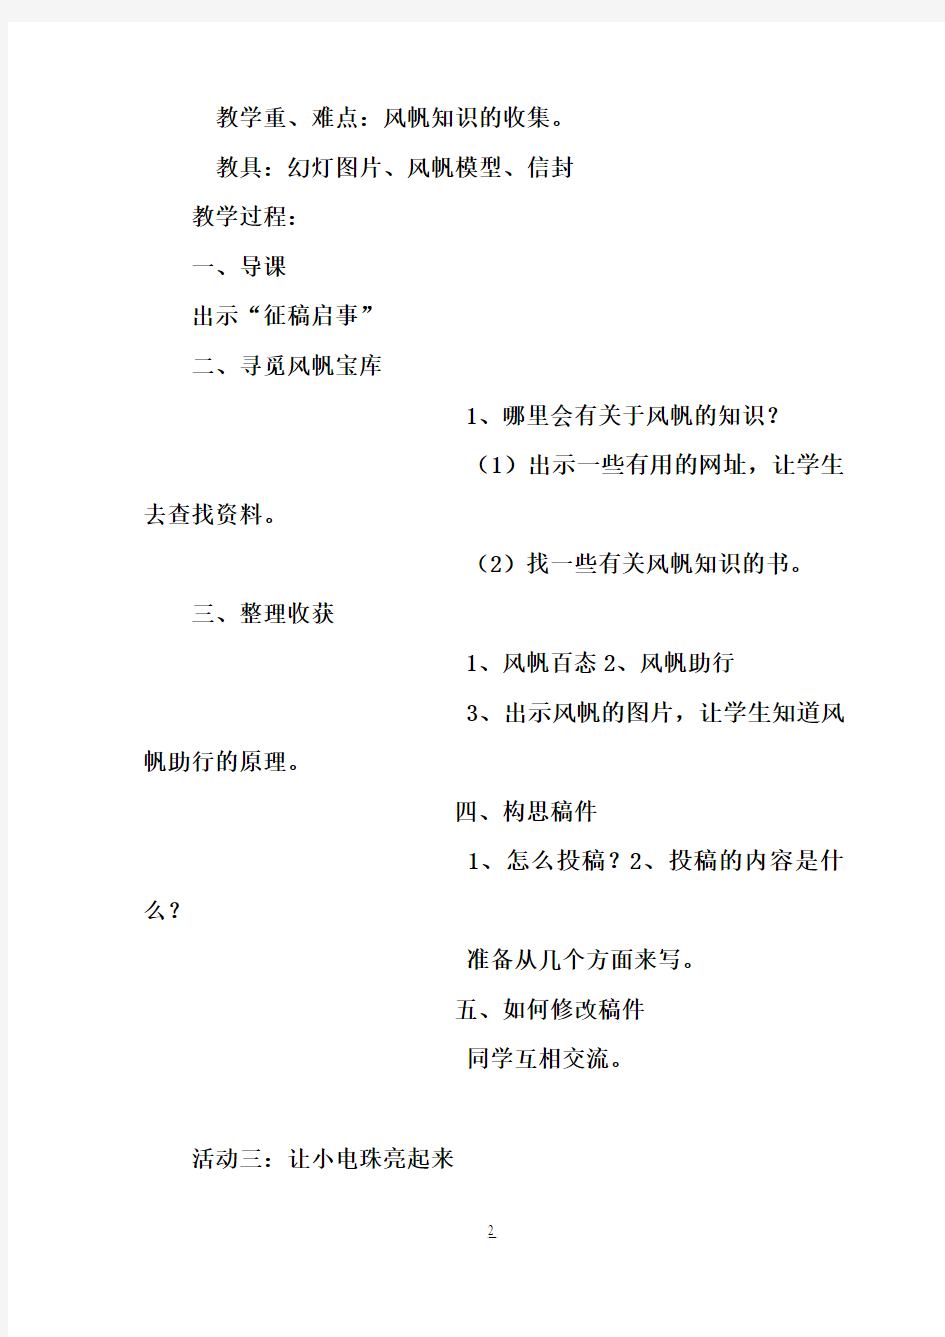 【完整打印版】小学五年级下册综合实践活动教案(上海科技教育出版社)21